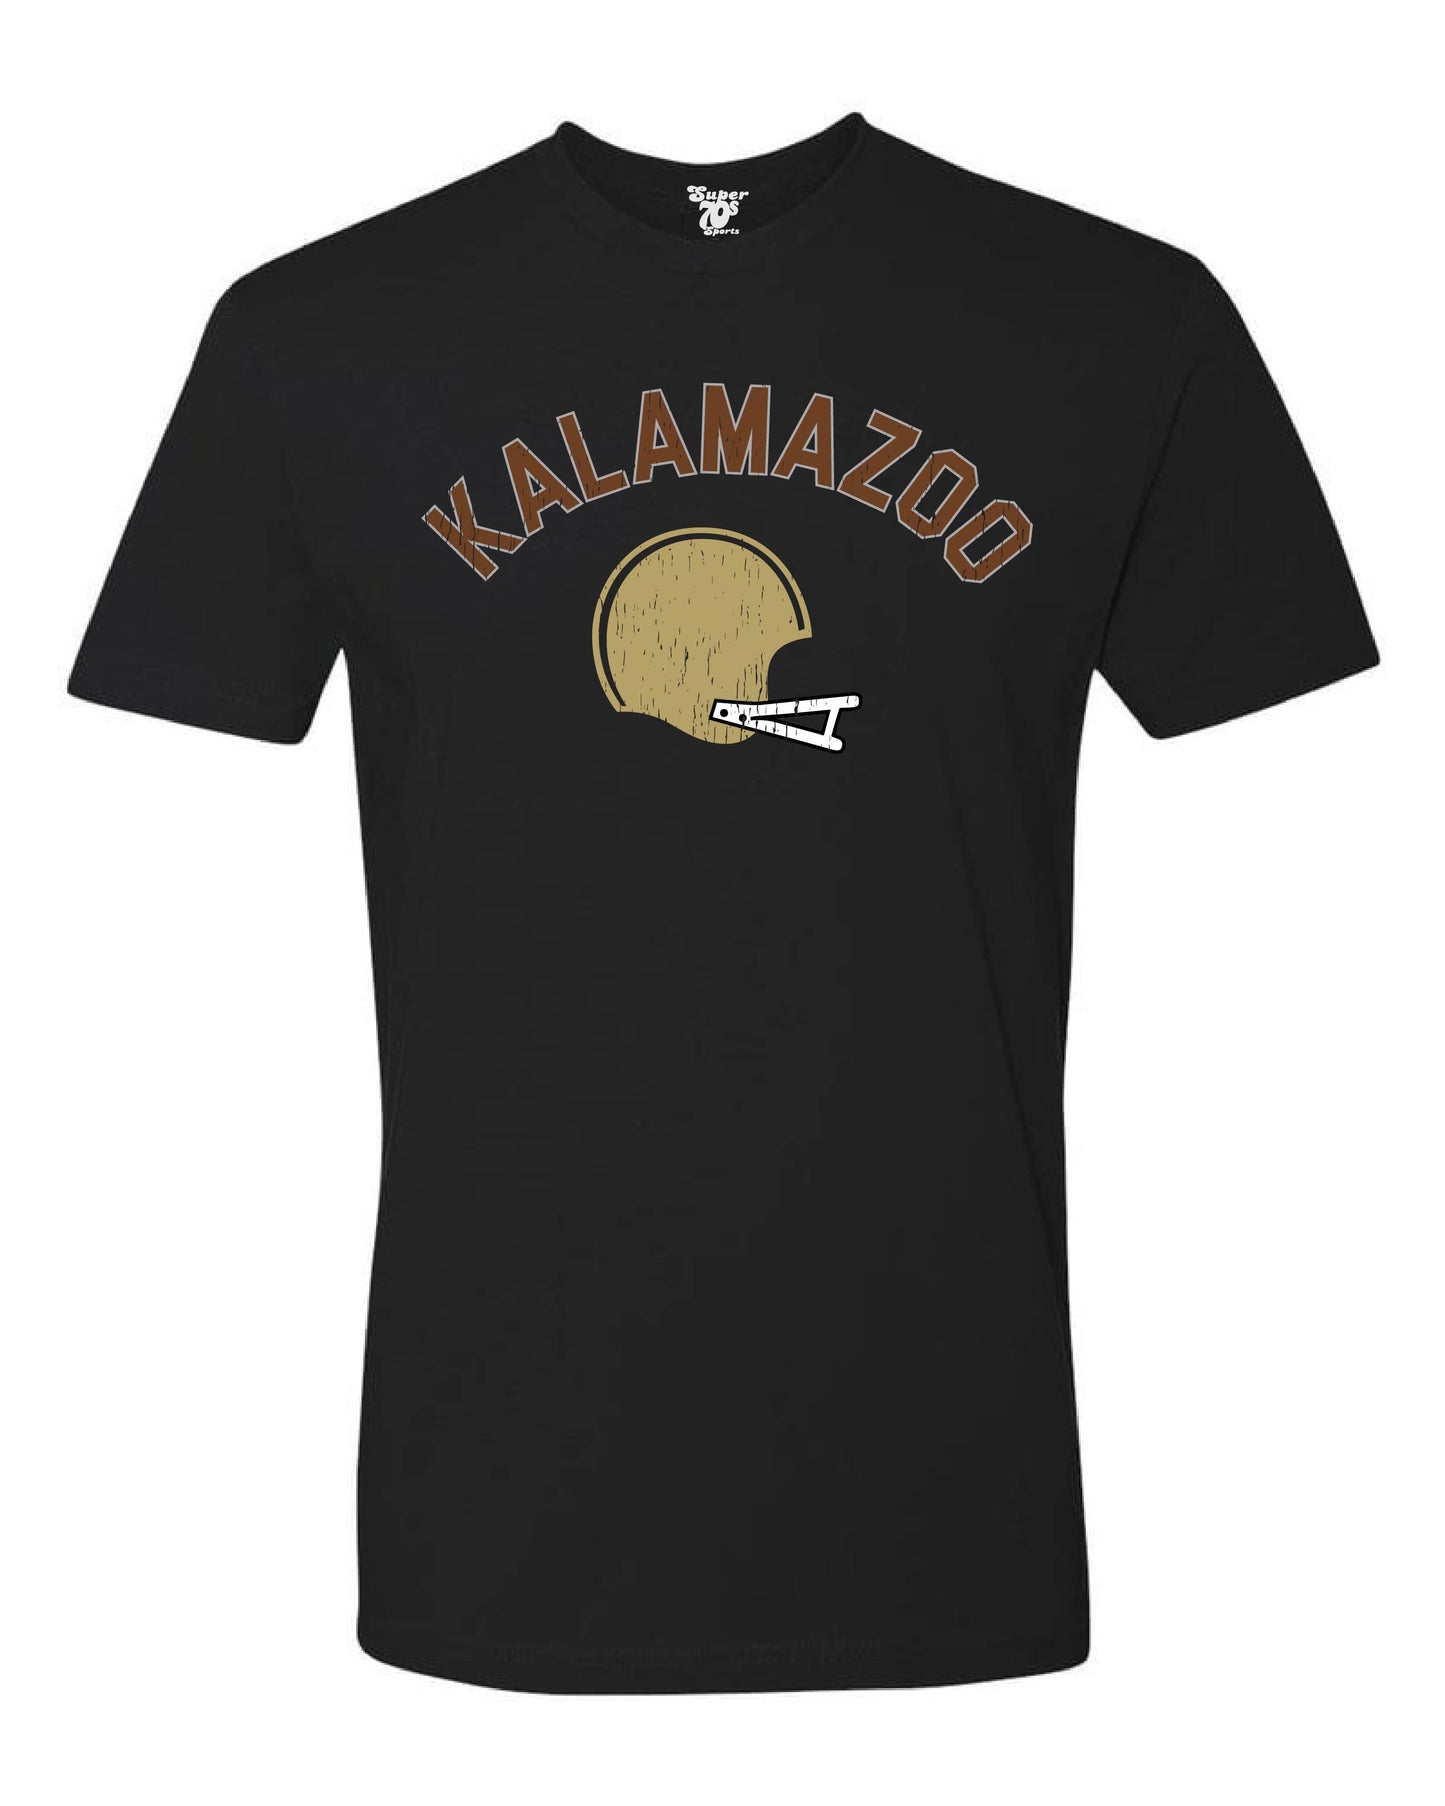 Kalamazoo Football Tee